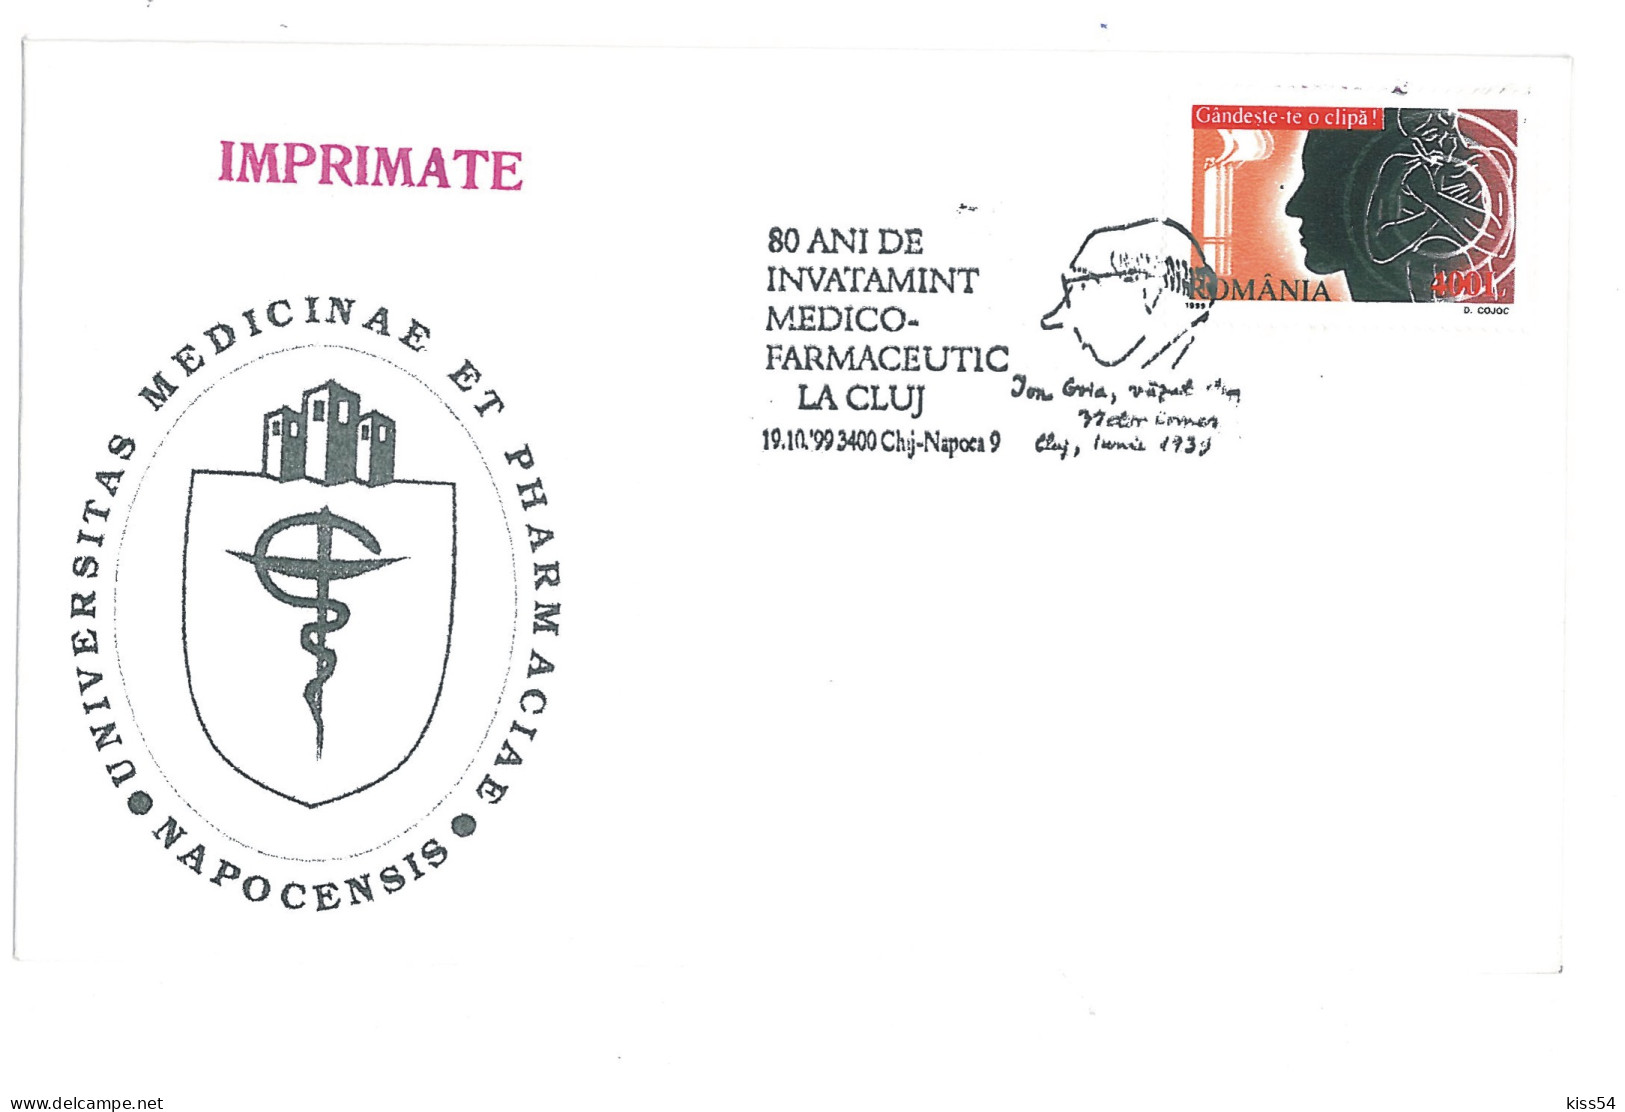 COV 88 - 302 Medical-Pharmaceutical Education, Romania - Cover - Used - 1999 - Farmacia